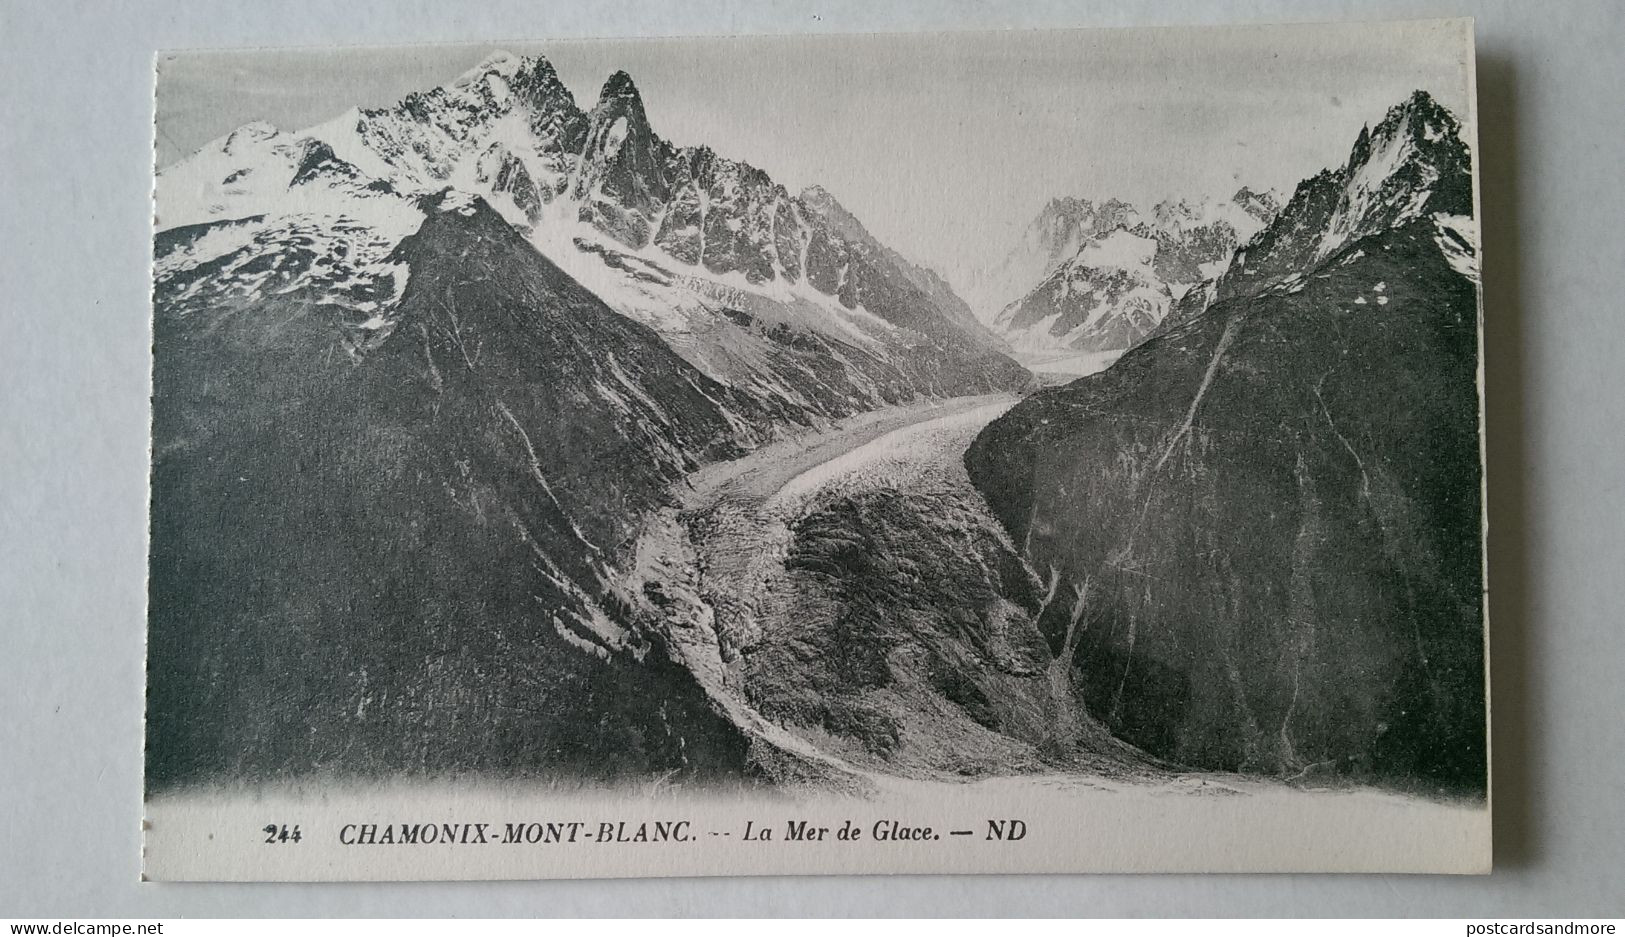 France Chamonix Mont Blanc Lot of 40 unused postcards Lévy et Neurdein Réunis ca. 1925